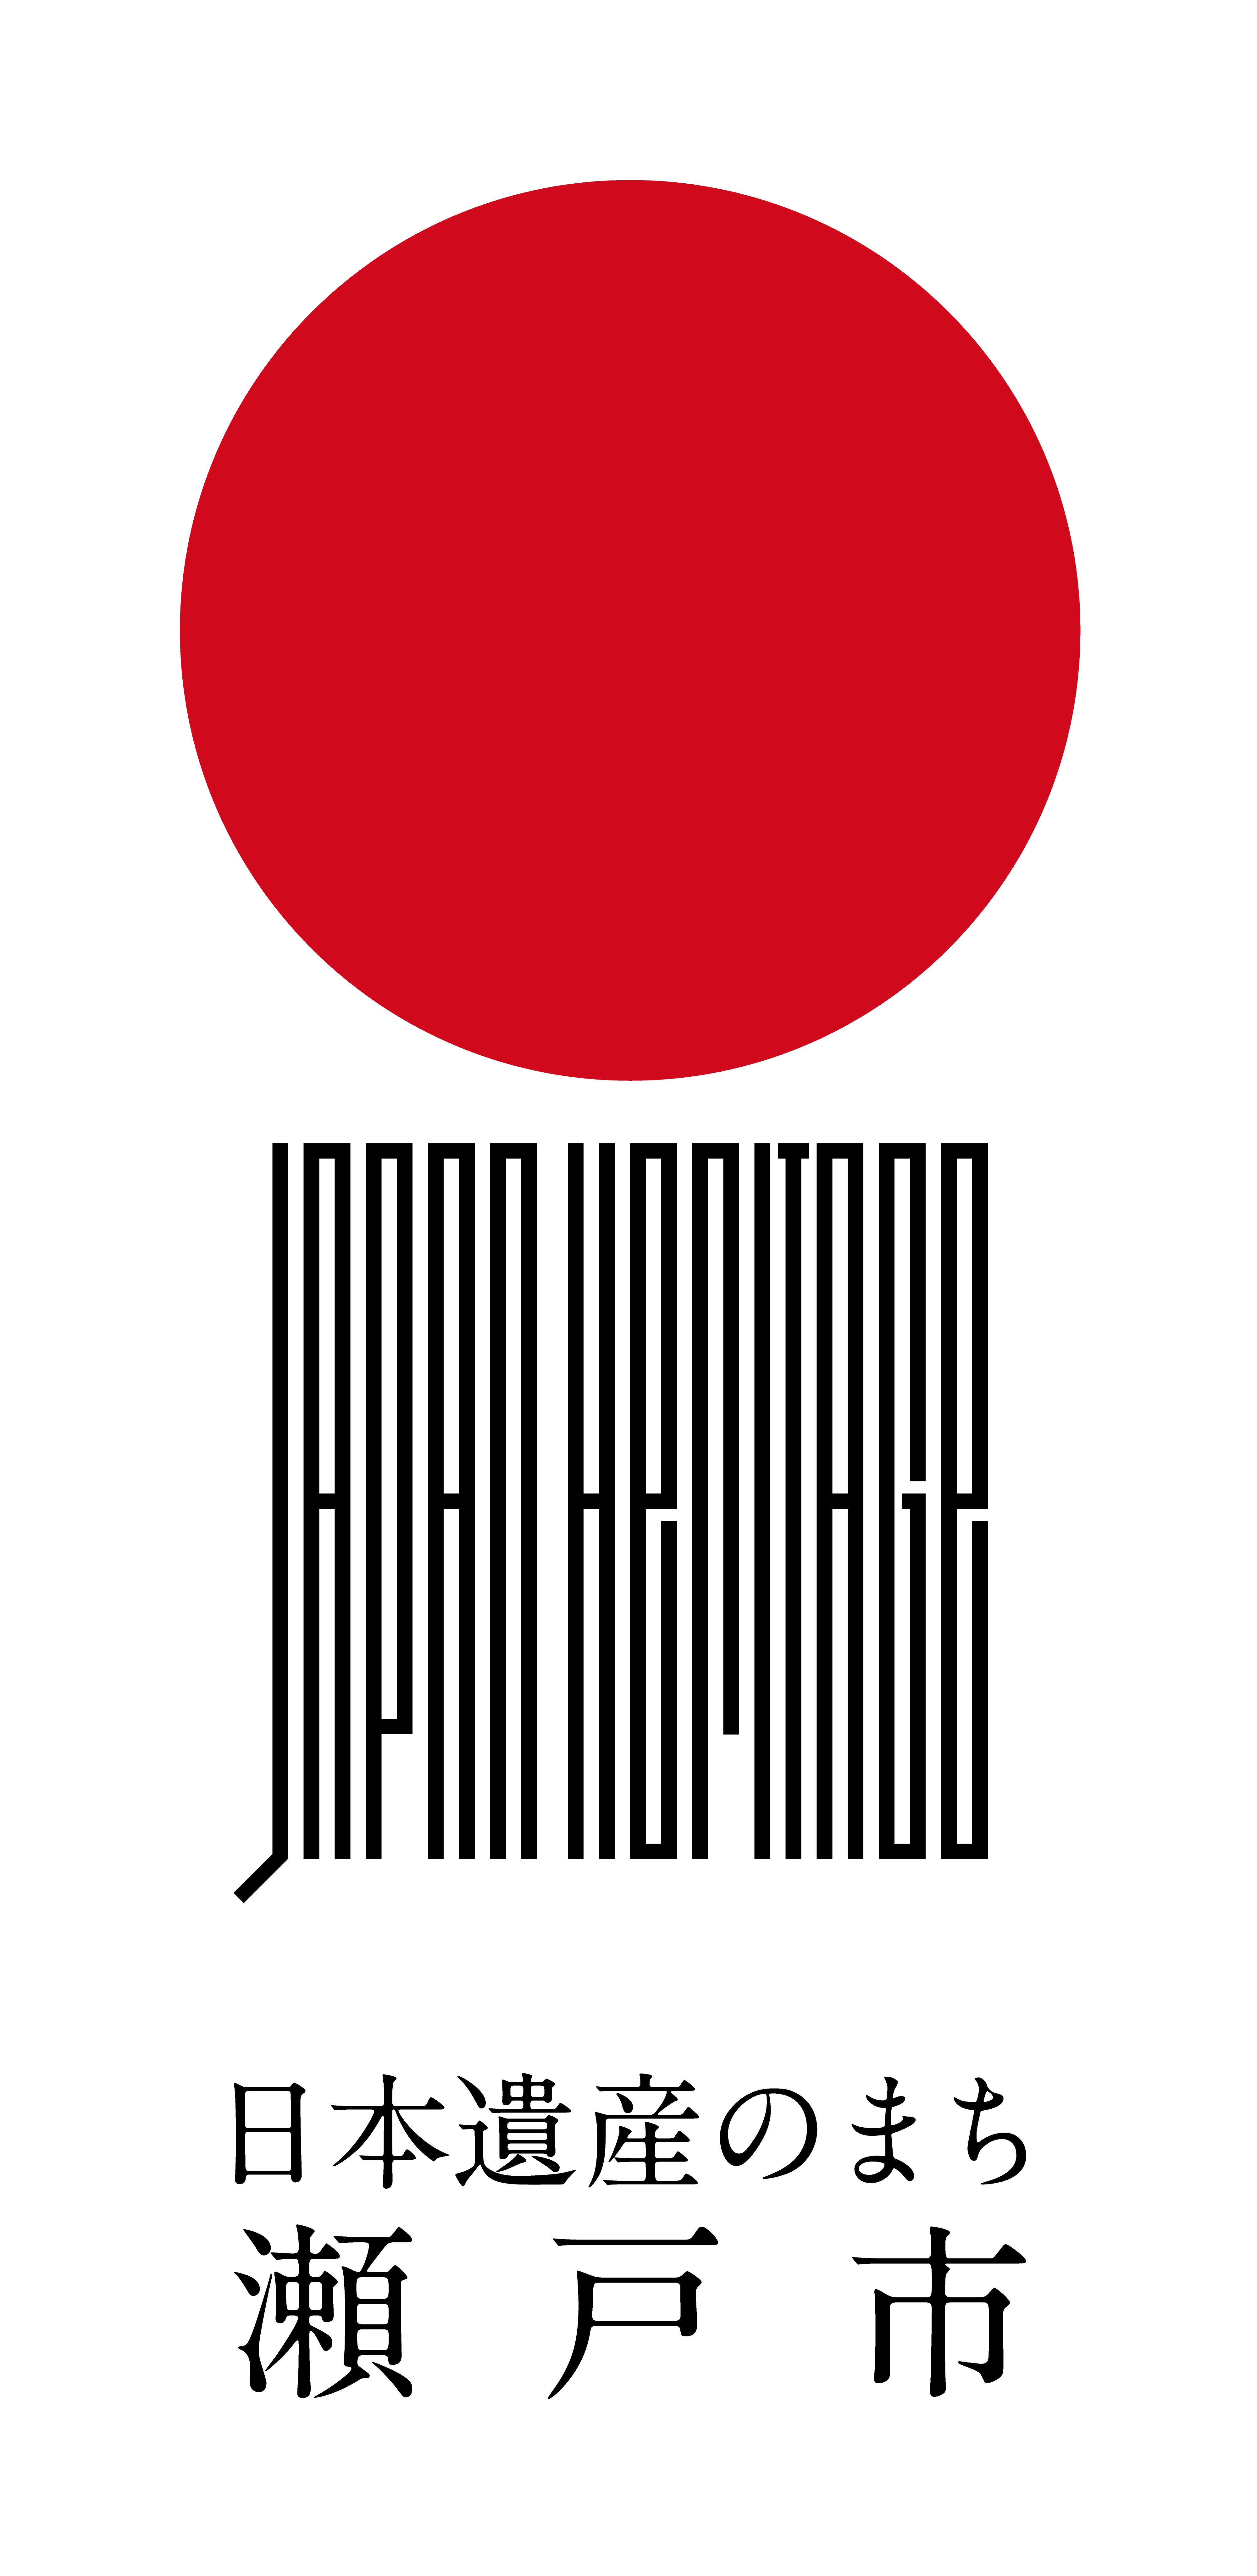 「日本遺産のまち瀬戸市」ロゴ